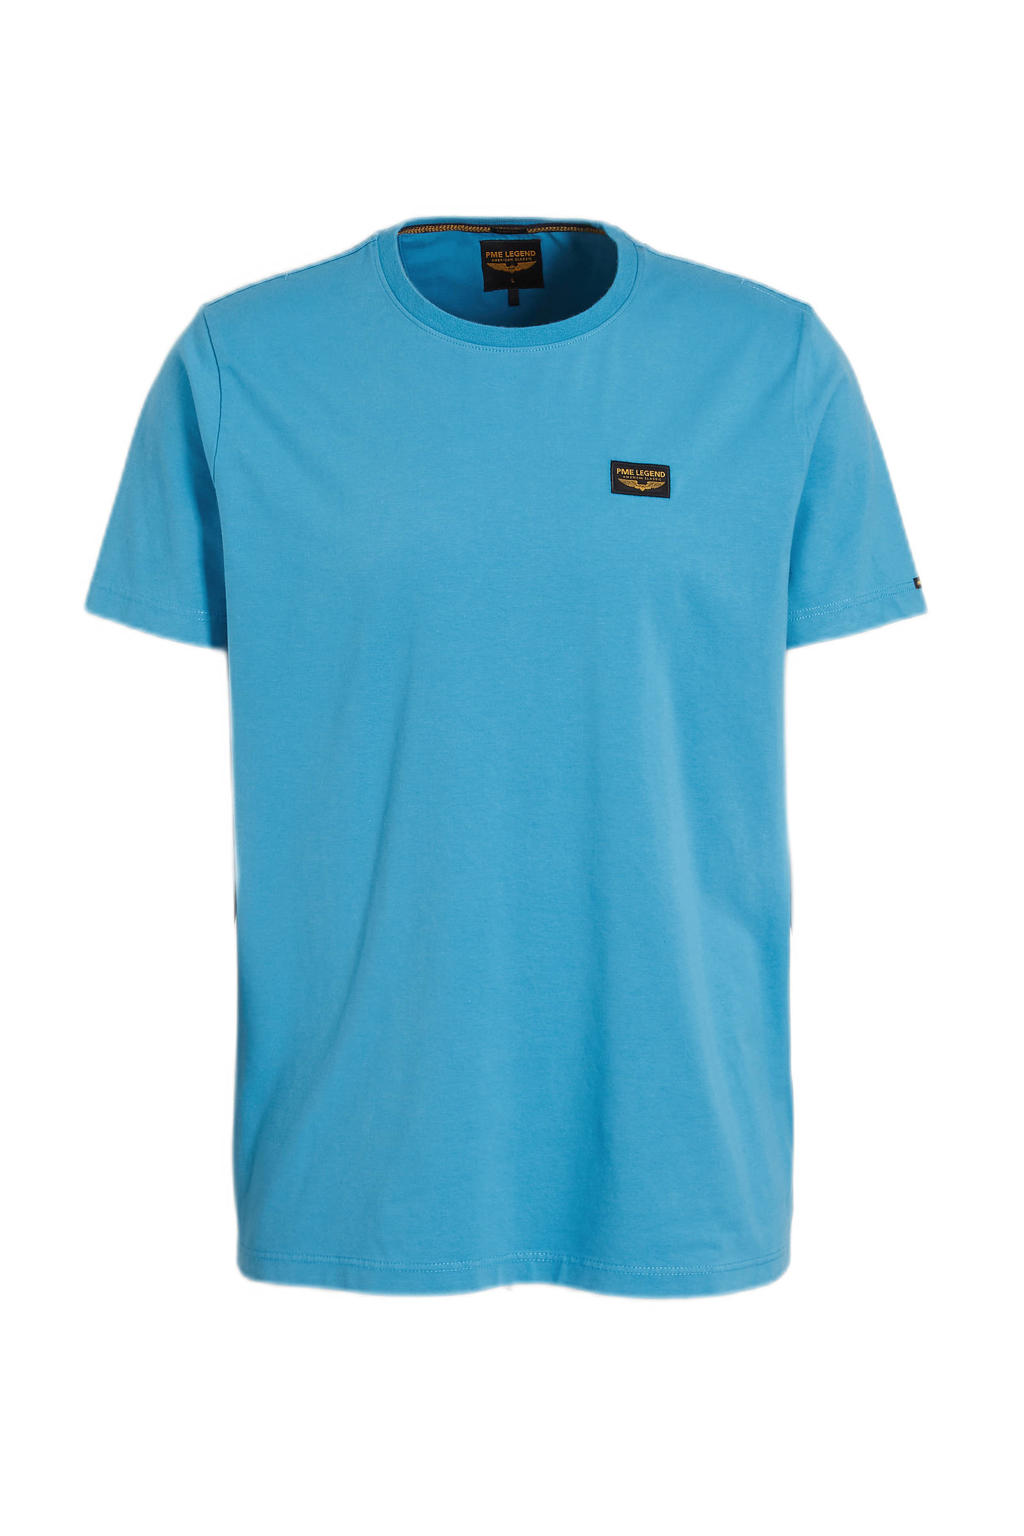 Blauwe heren PME Legend regular fit T-shirt van stretchkatoen met korte mouwen en ronde hals